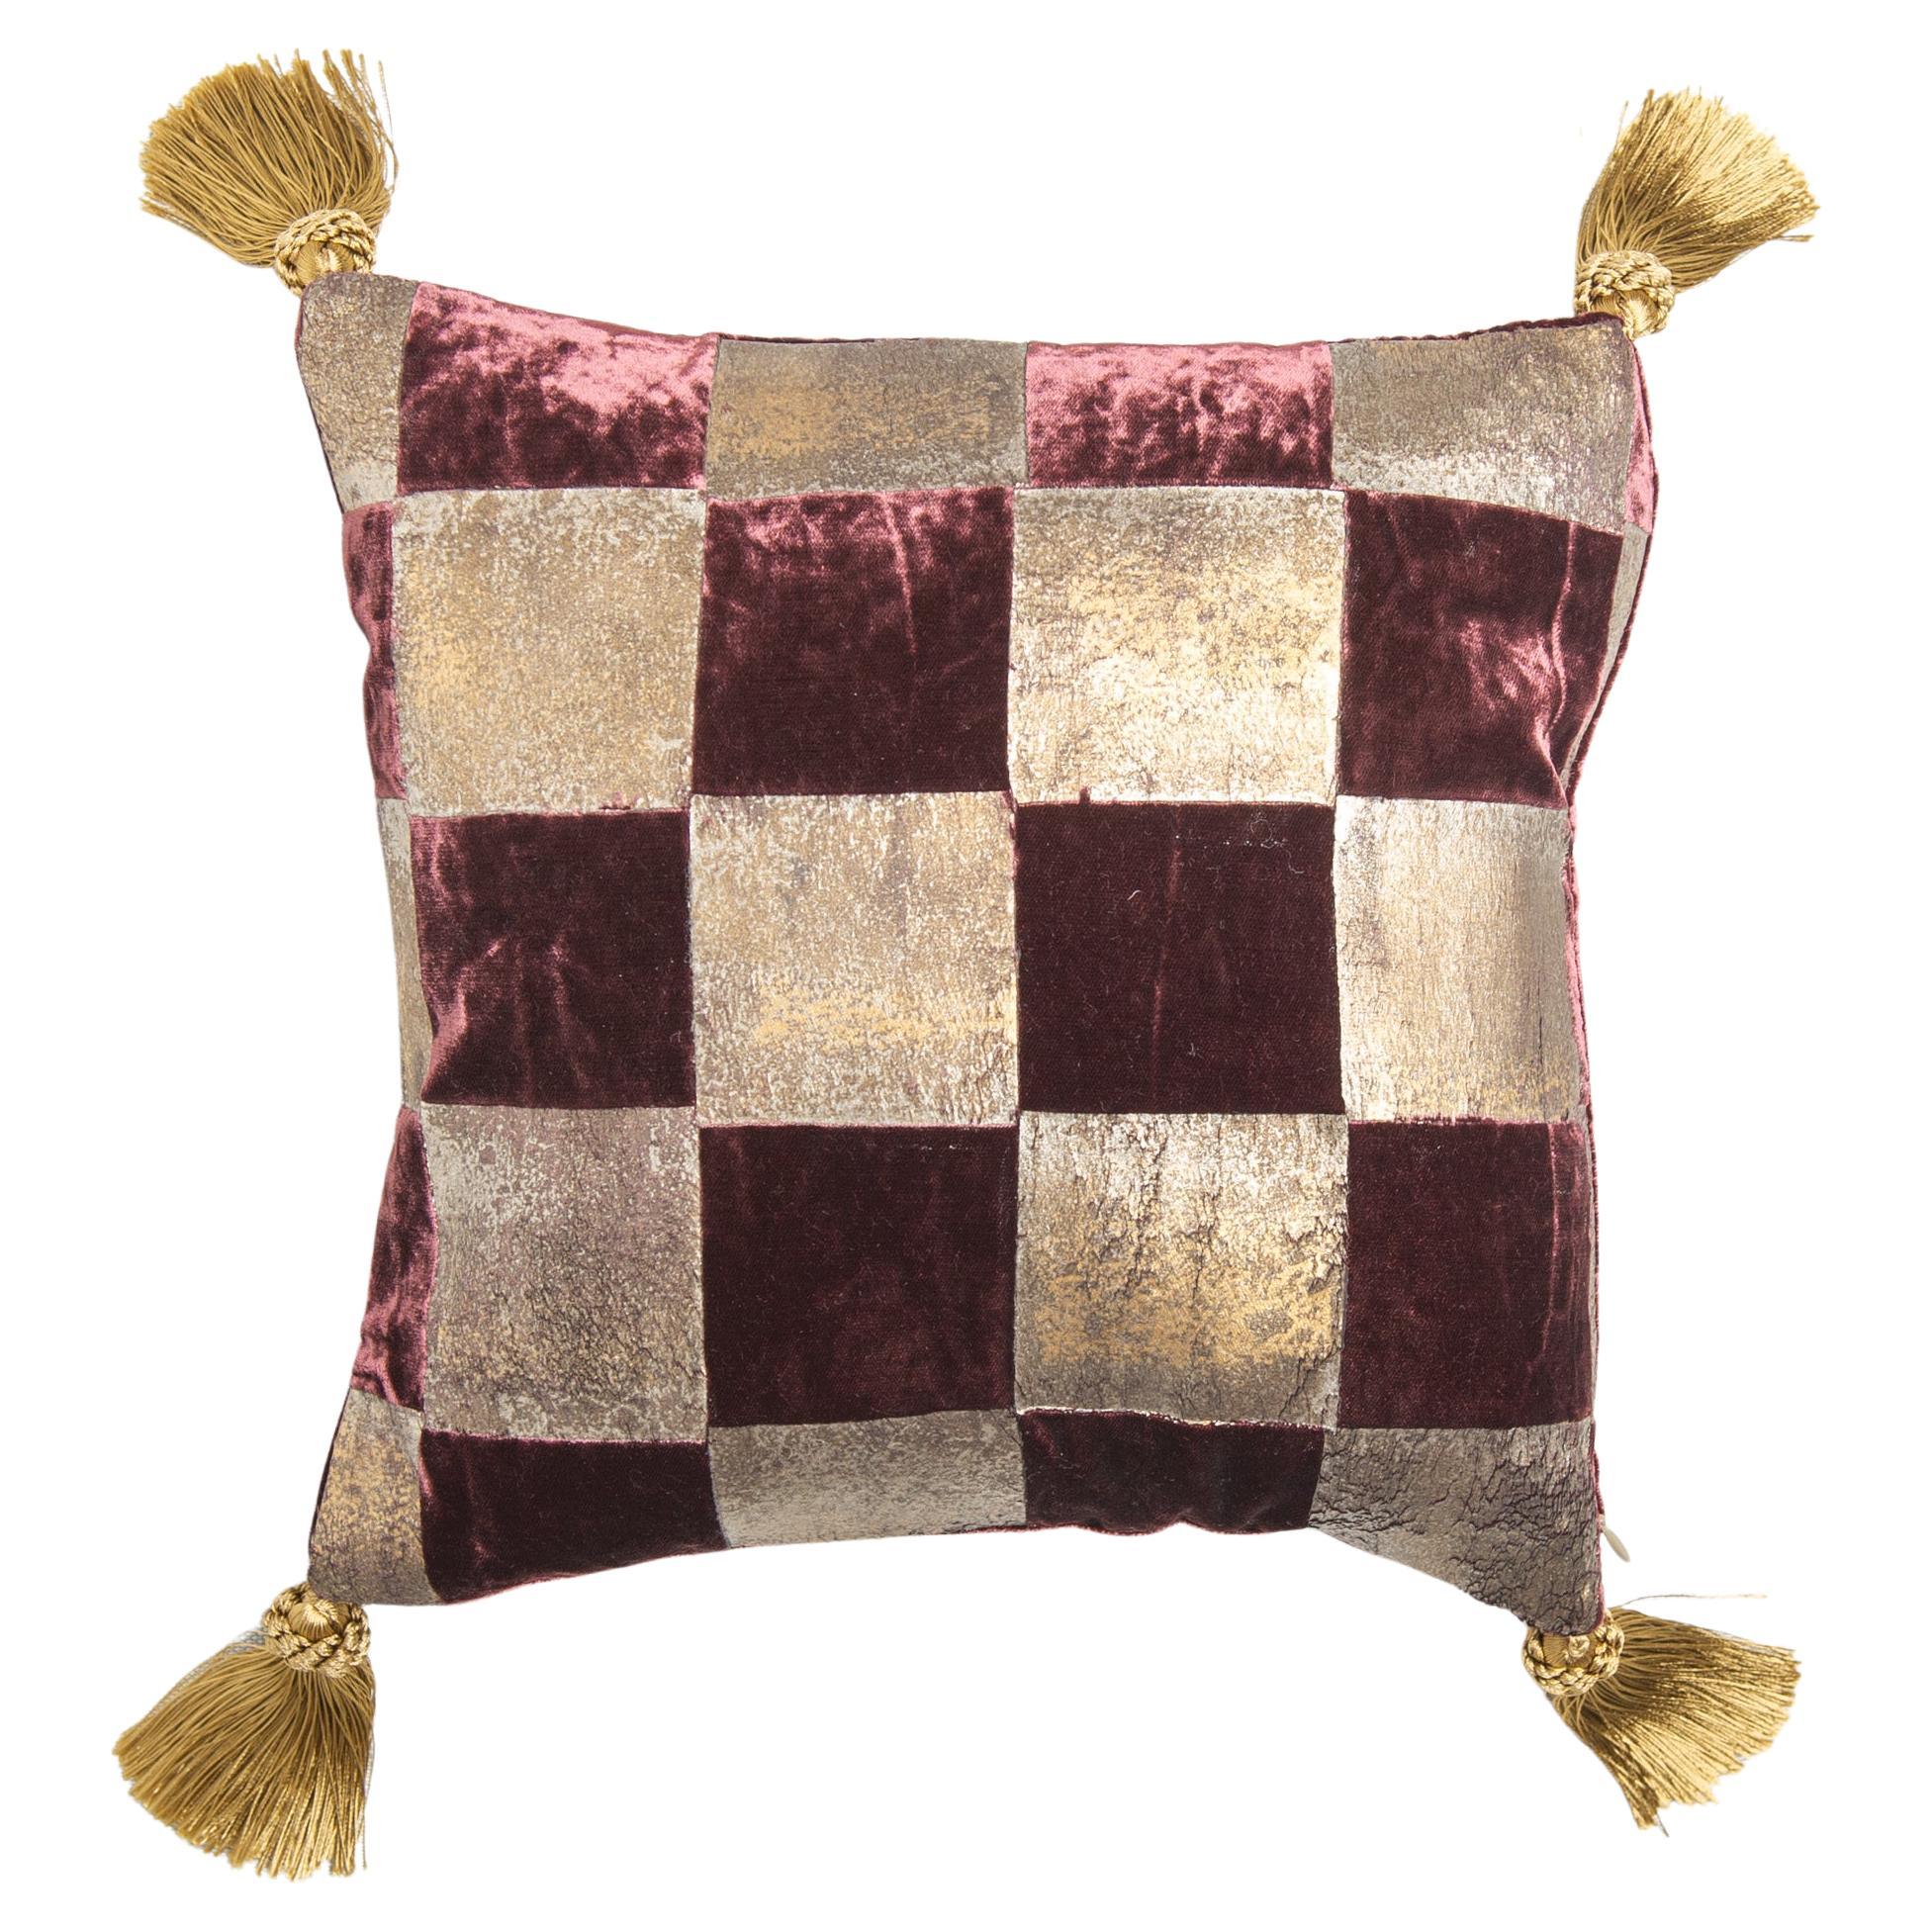  Pillow in Plum-Colored Elegant  Signed Velvet